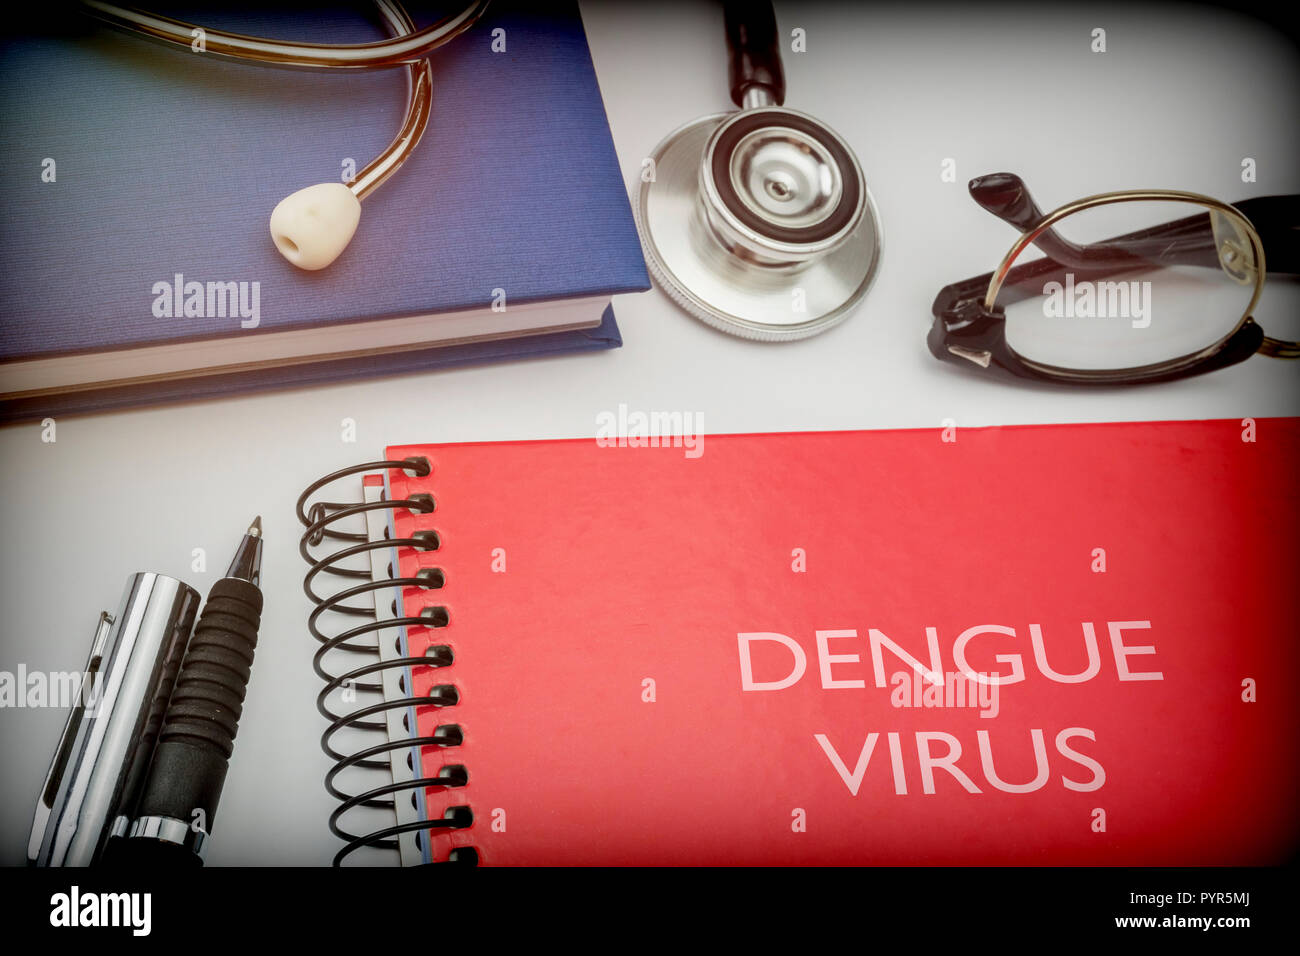 Intitolato red book virus Dengue lungo con attrezzature mediche, immagine concettuale Foto Stock